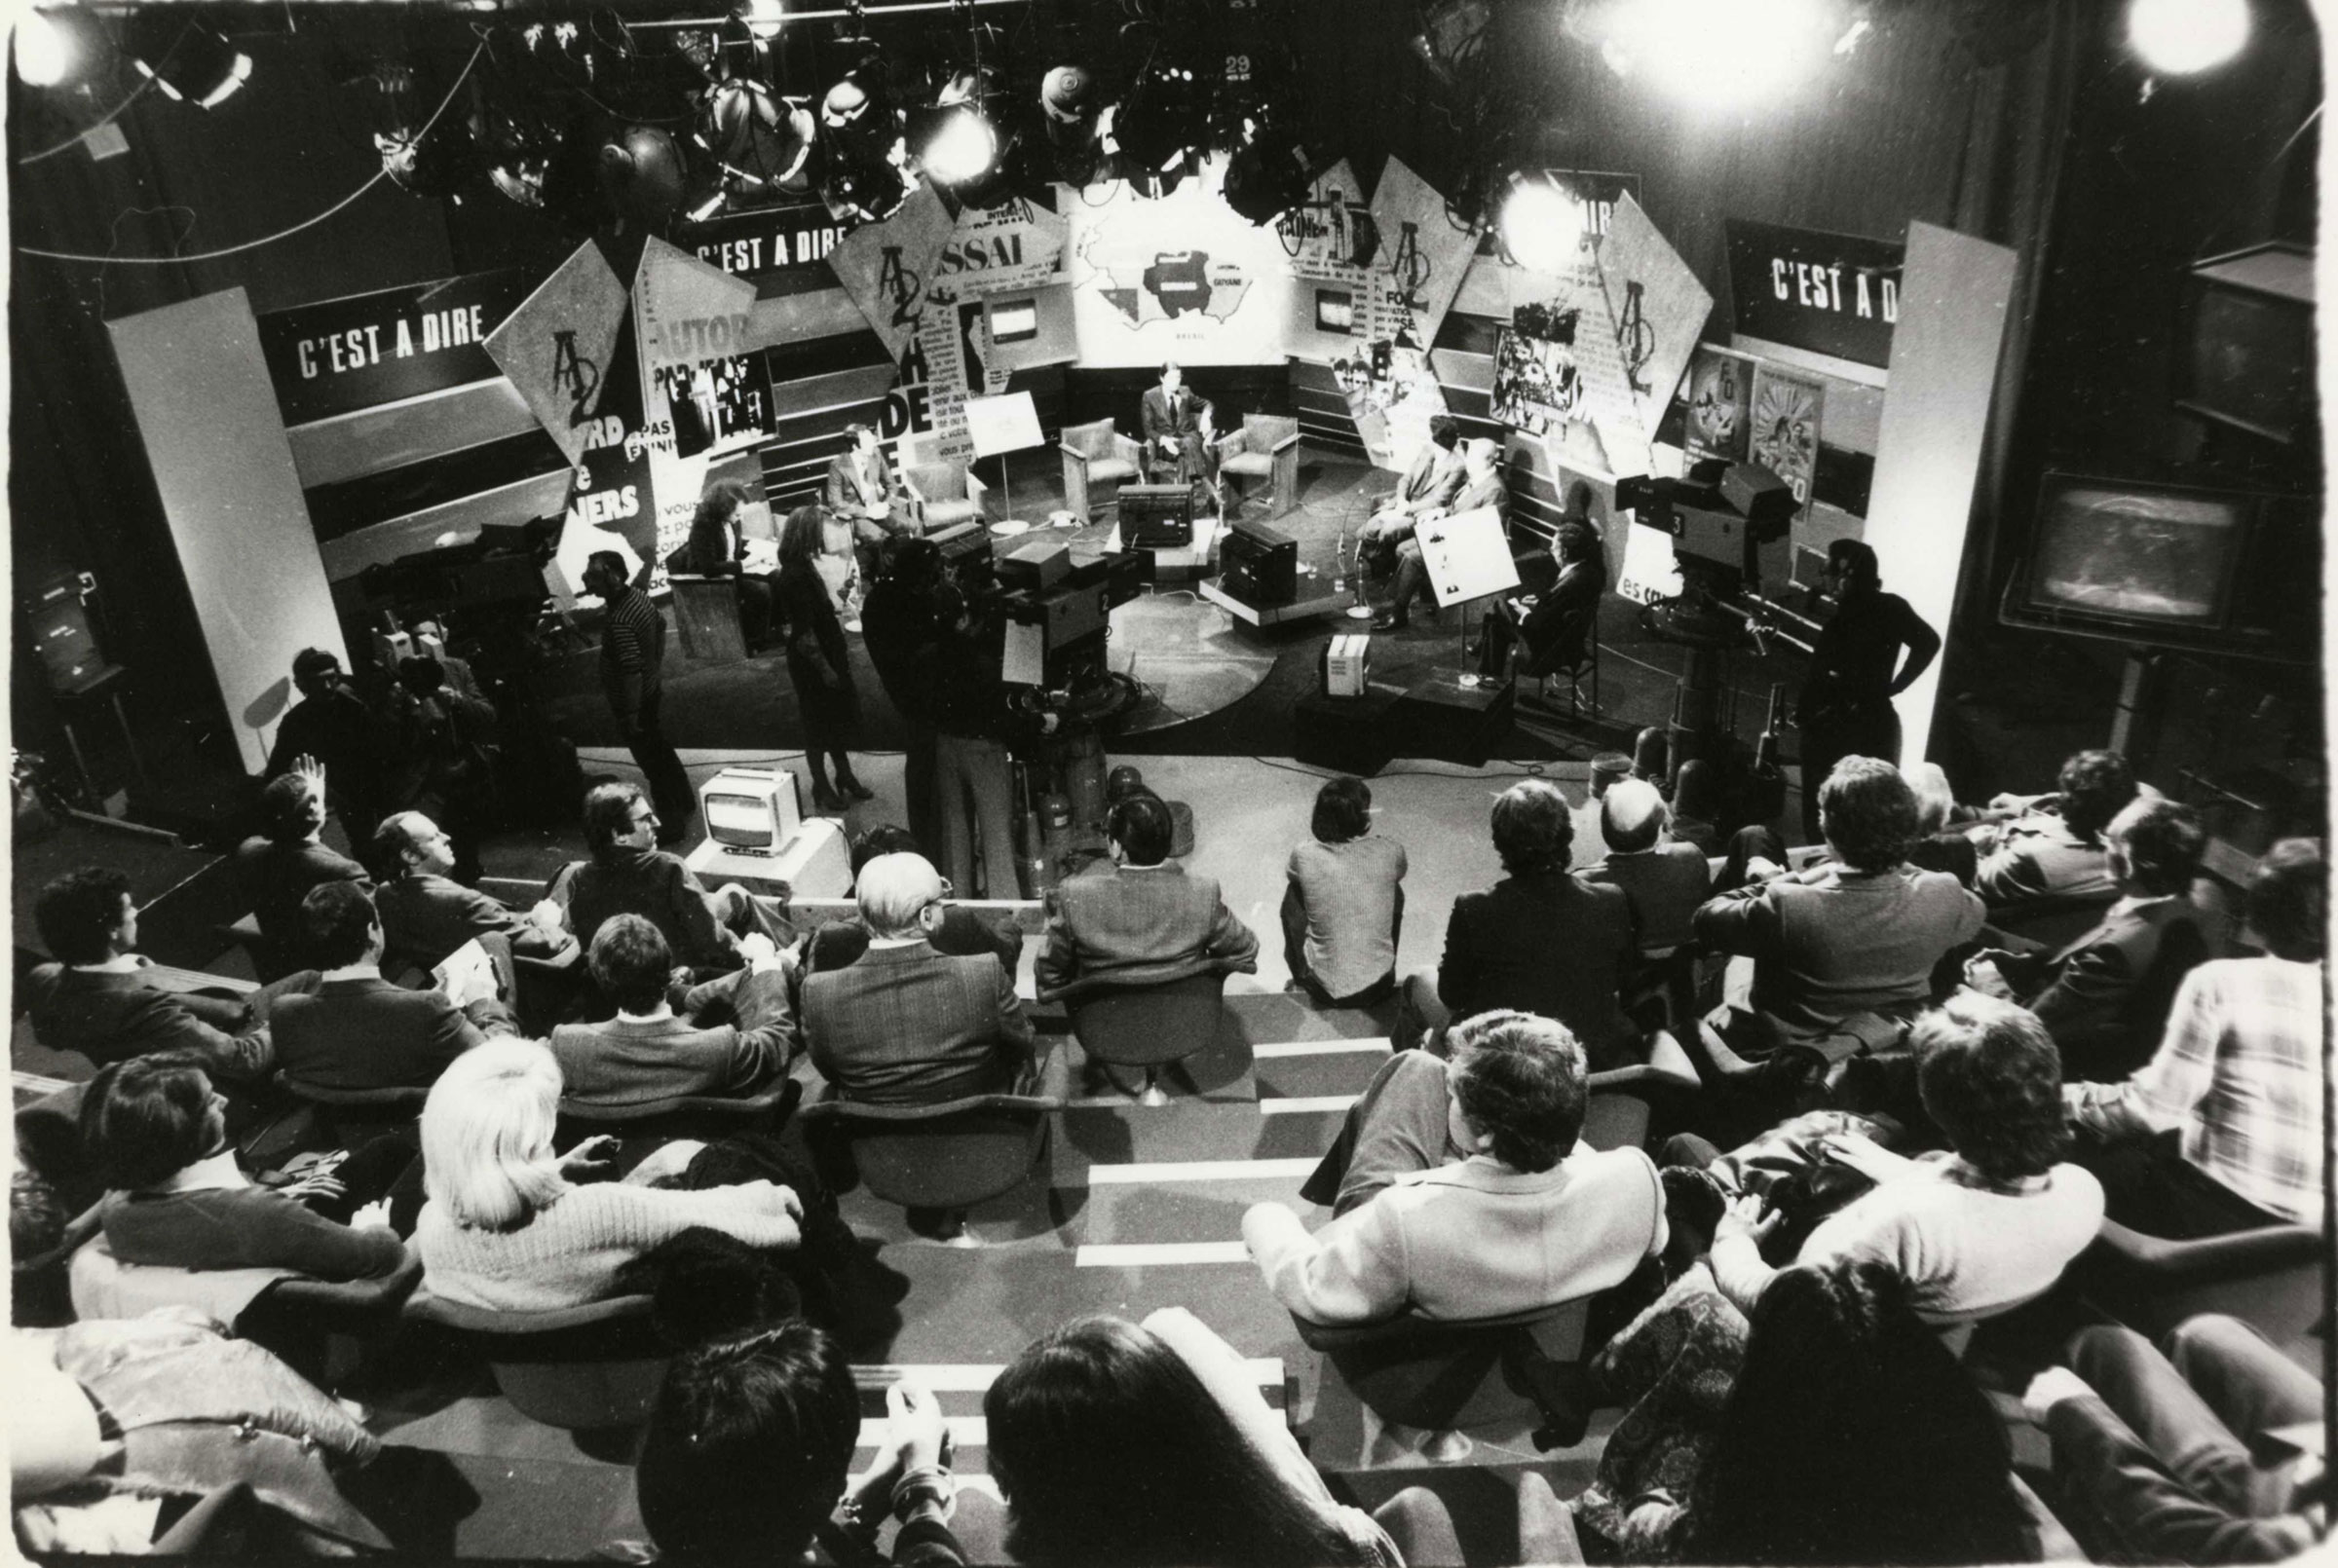 Photo prise à partir de 1976 dans le Studio 101 durant le tournage de l’émission de télévision « C’est-à-dire » présentée par Georges Leroy et Jean-Marie Cavada  / Archives écrites de Radio France.